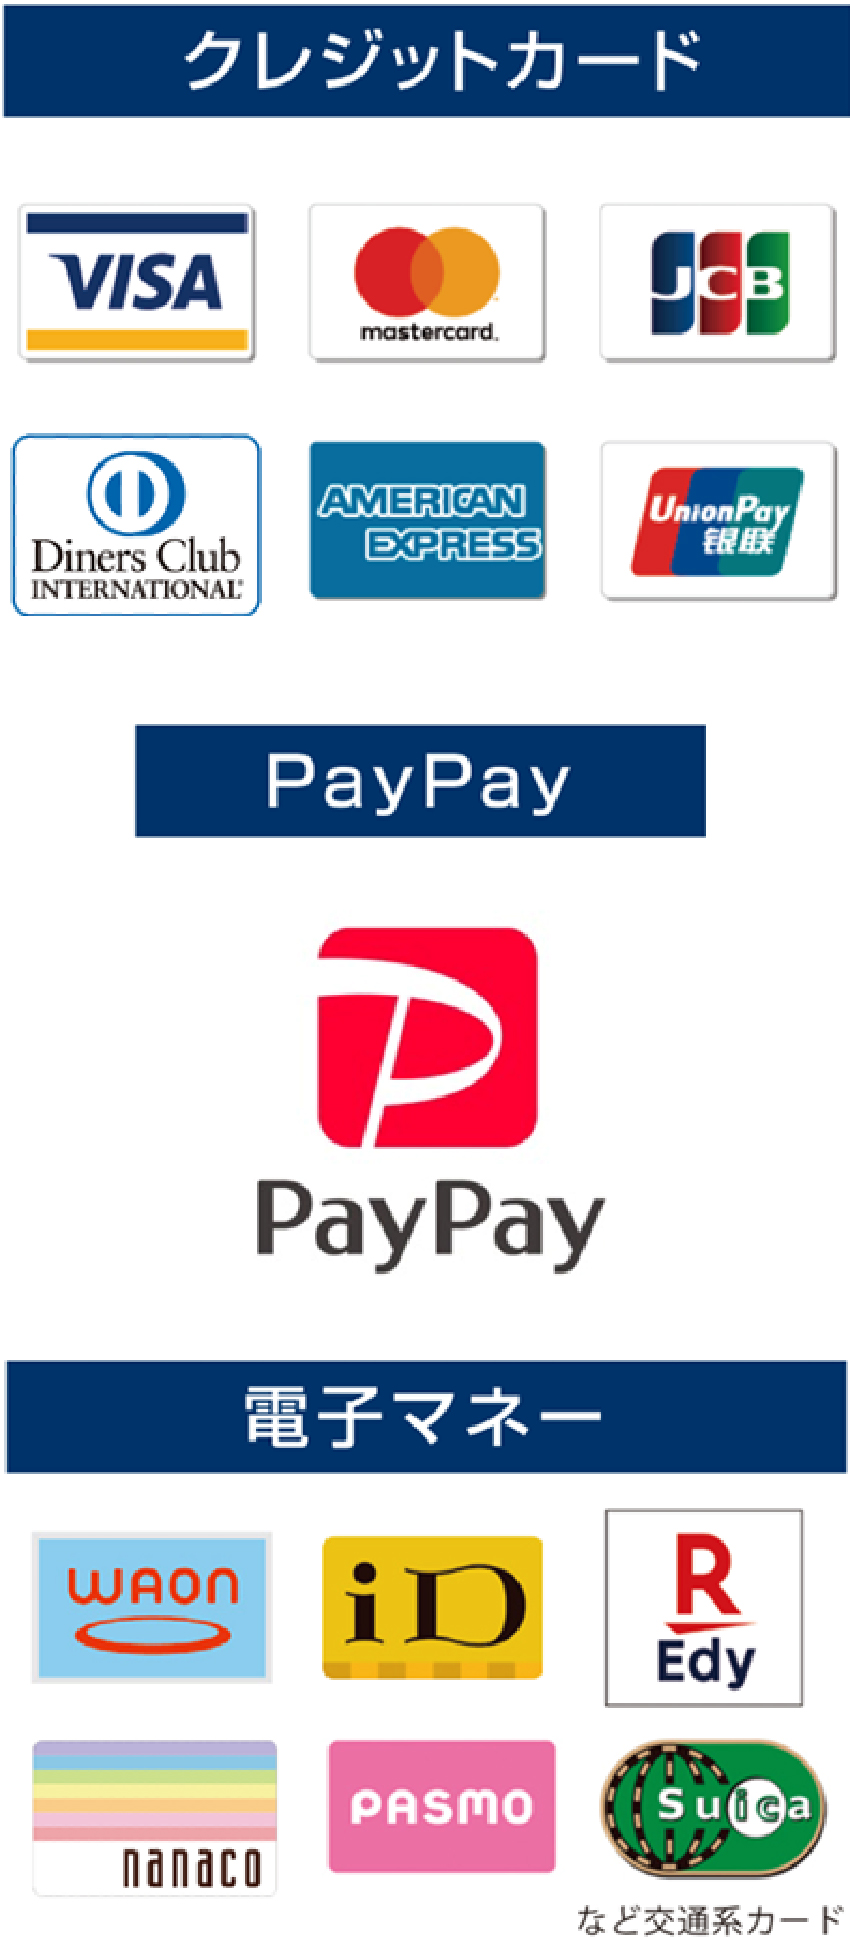 クレジットカードはVISA／MASTER、JCB、AMERICAN EXPRESS、Diners Club、UnionPay銀聯、PayPay、電子マネーはWAON、ID、楽天Edy、nanaco、PASMO、Suica、交通系カード（PiTaPaはご利用いただけません）